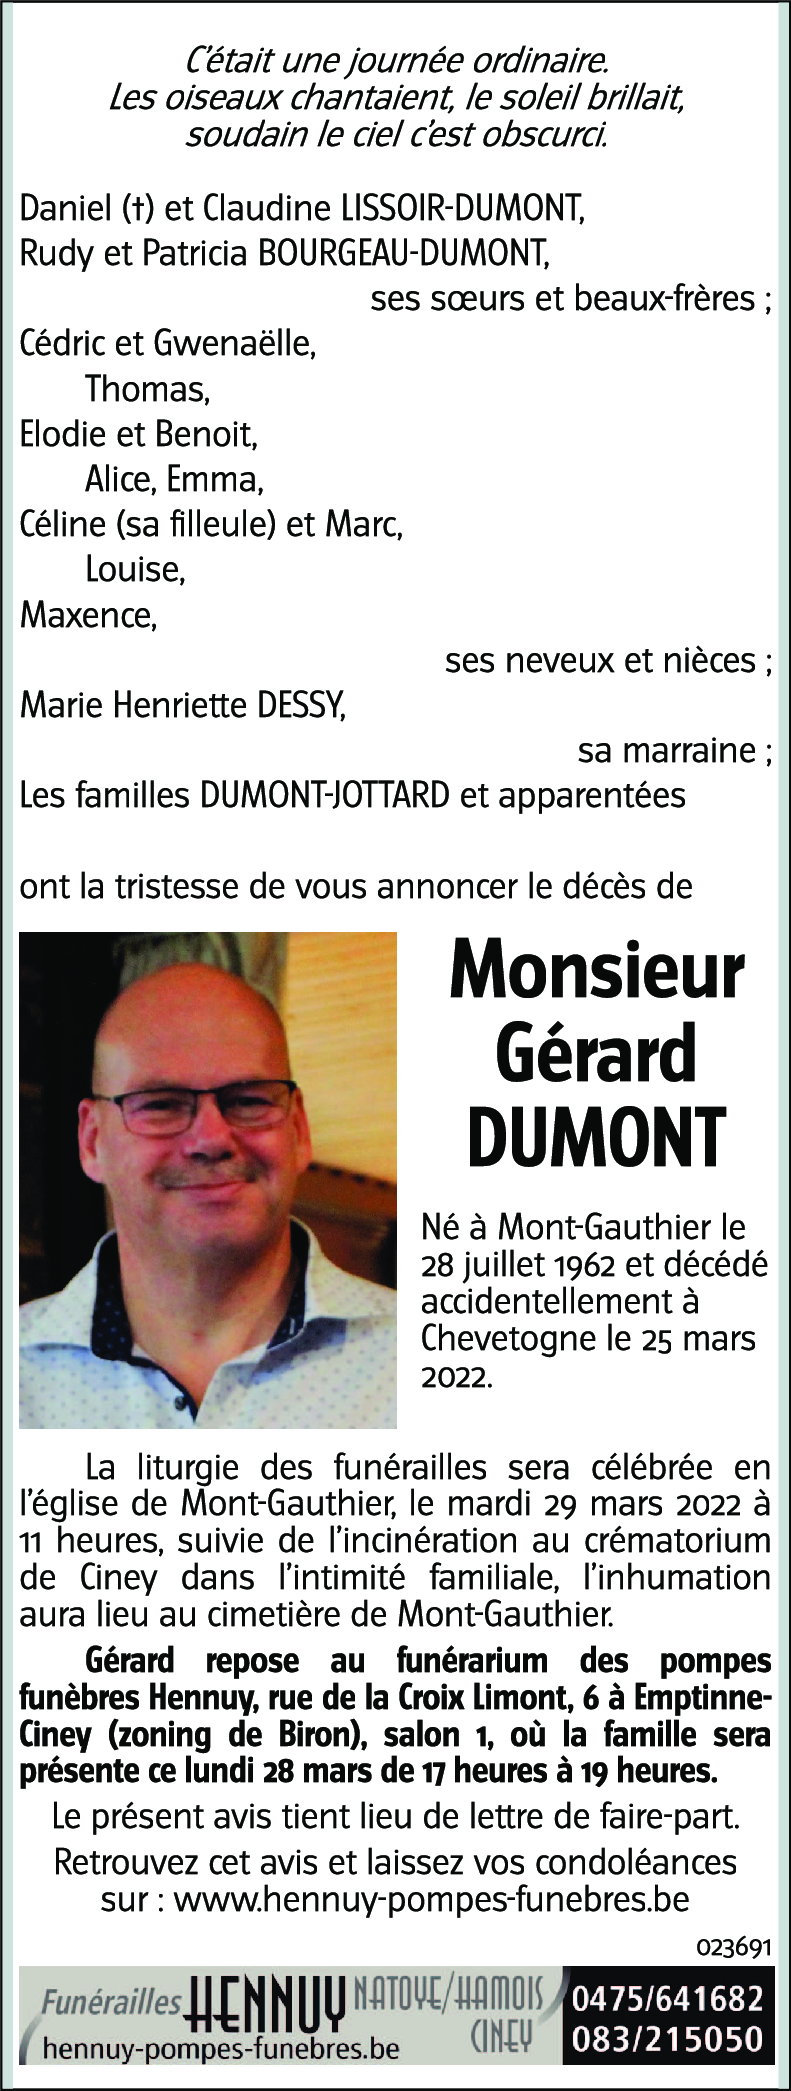 Gérard DUMONT